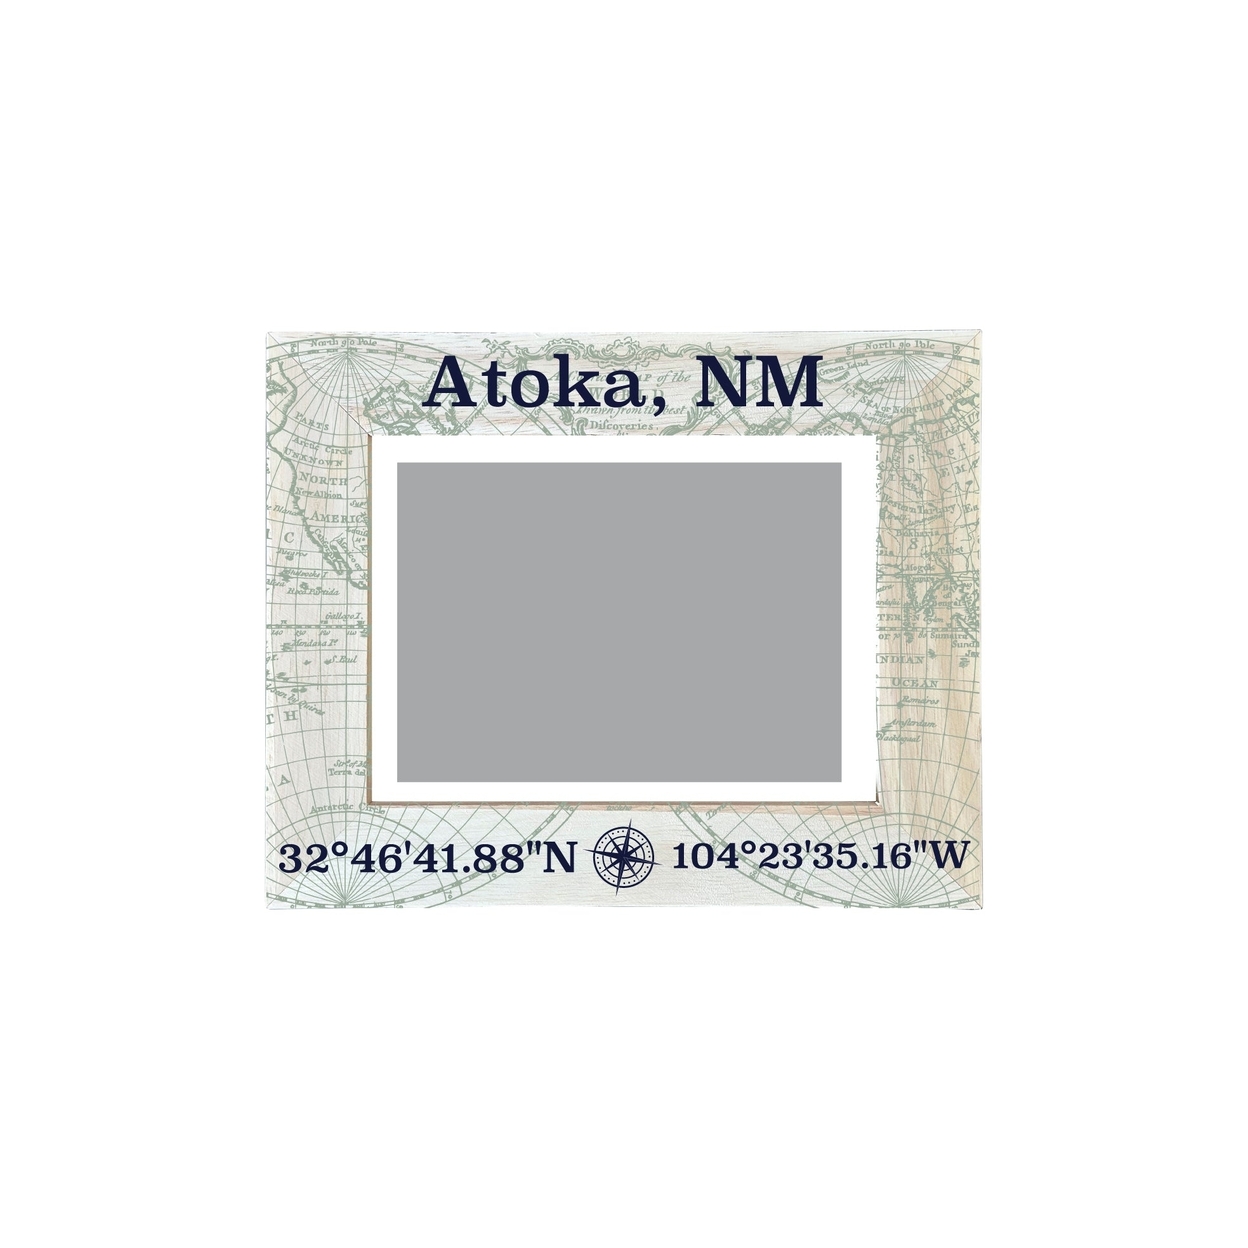 Atoka New Mexico Souvenir Wooden Photo Frame Compass Coordinates Design Matted To 4 X 6